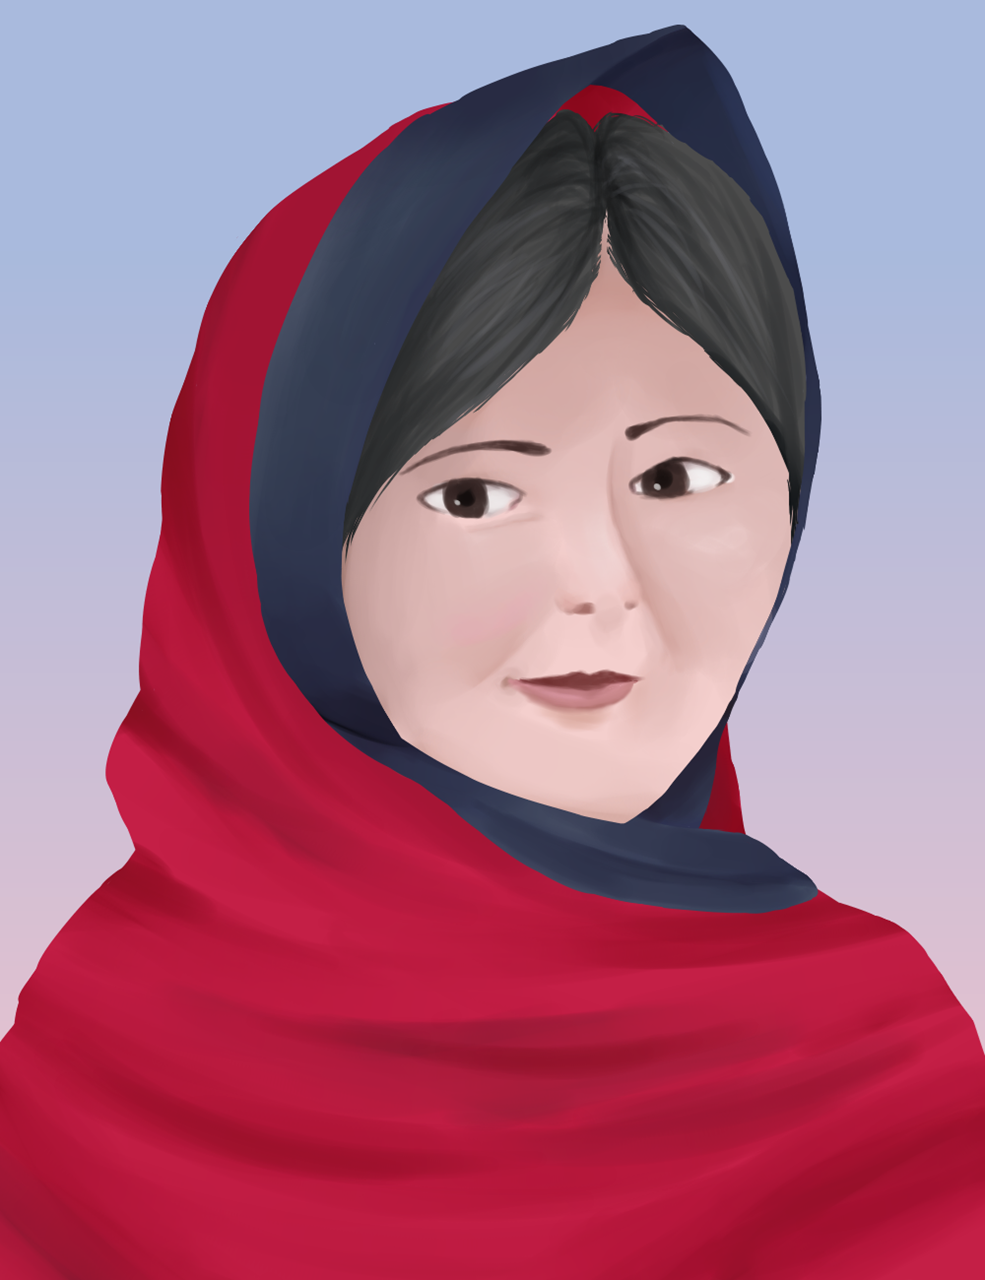 Picture of Malala Yousafzai